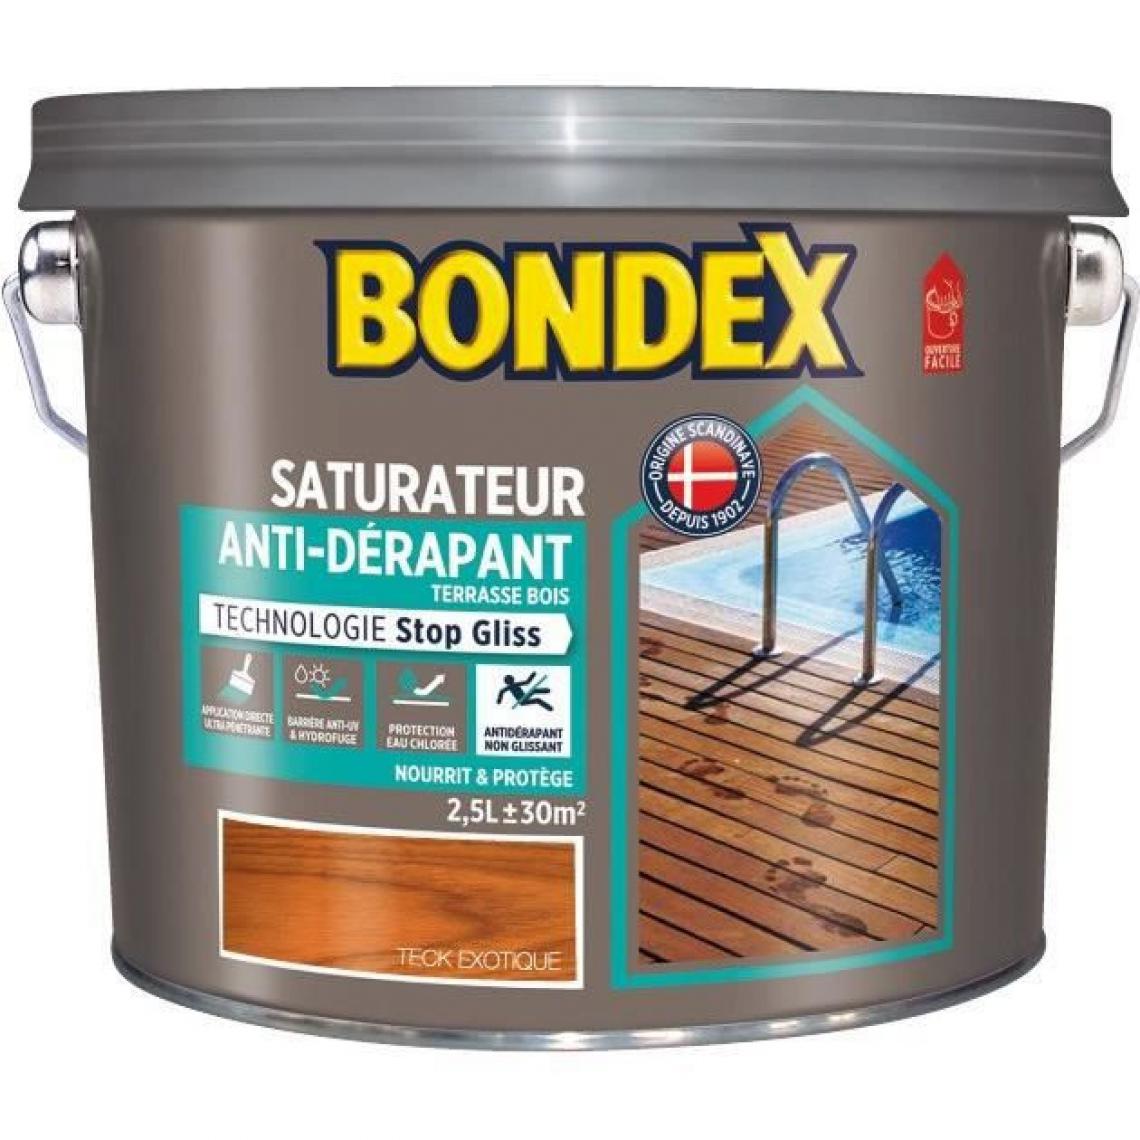 Bondex - BONDEX Saturateur Anti-Derapant Jardin - Teck Exotique Mat, 2,5L - Peinture & enduit rénovation